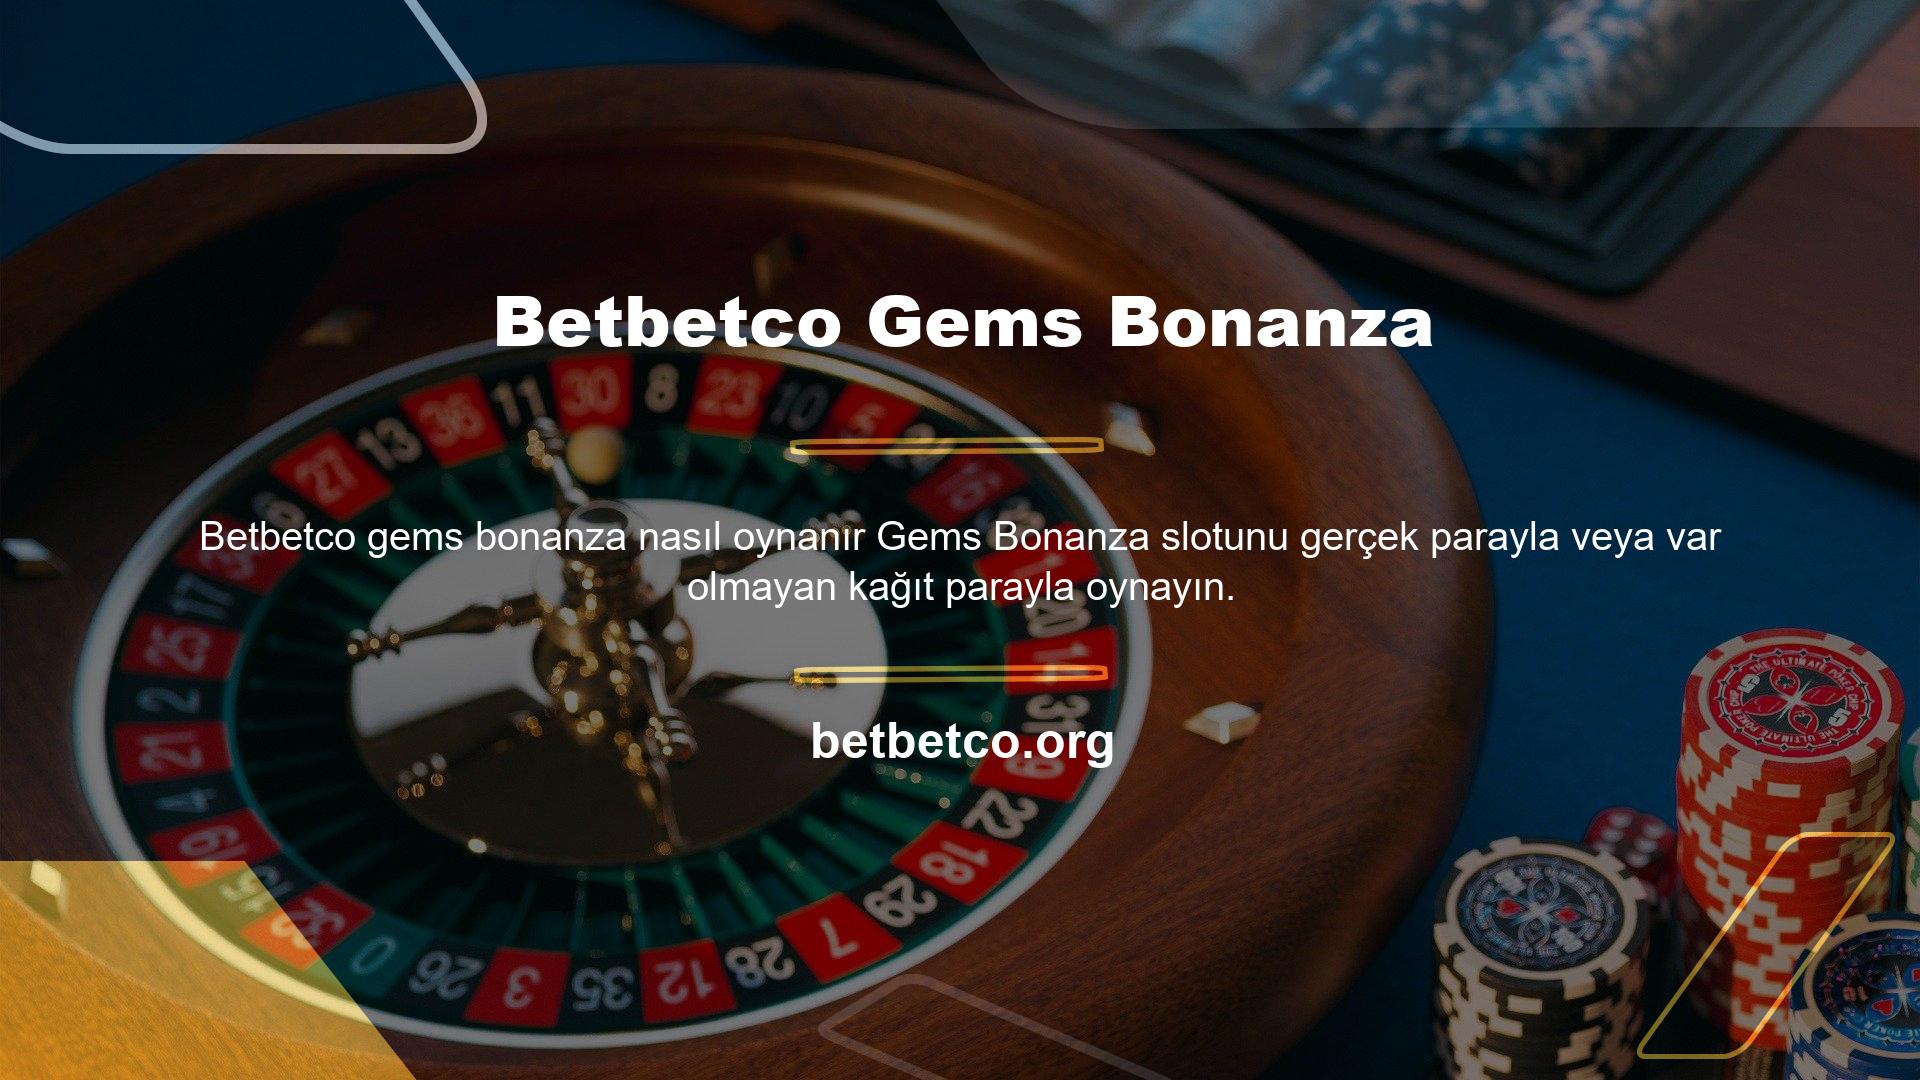 Gerçek para ile oynamak için Betbetco tarafından sağlanan demo versiyonuna giriş yapmanız gerekmektedir